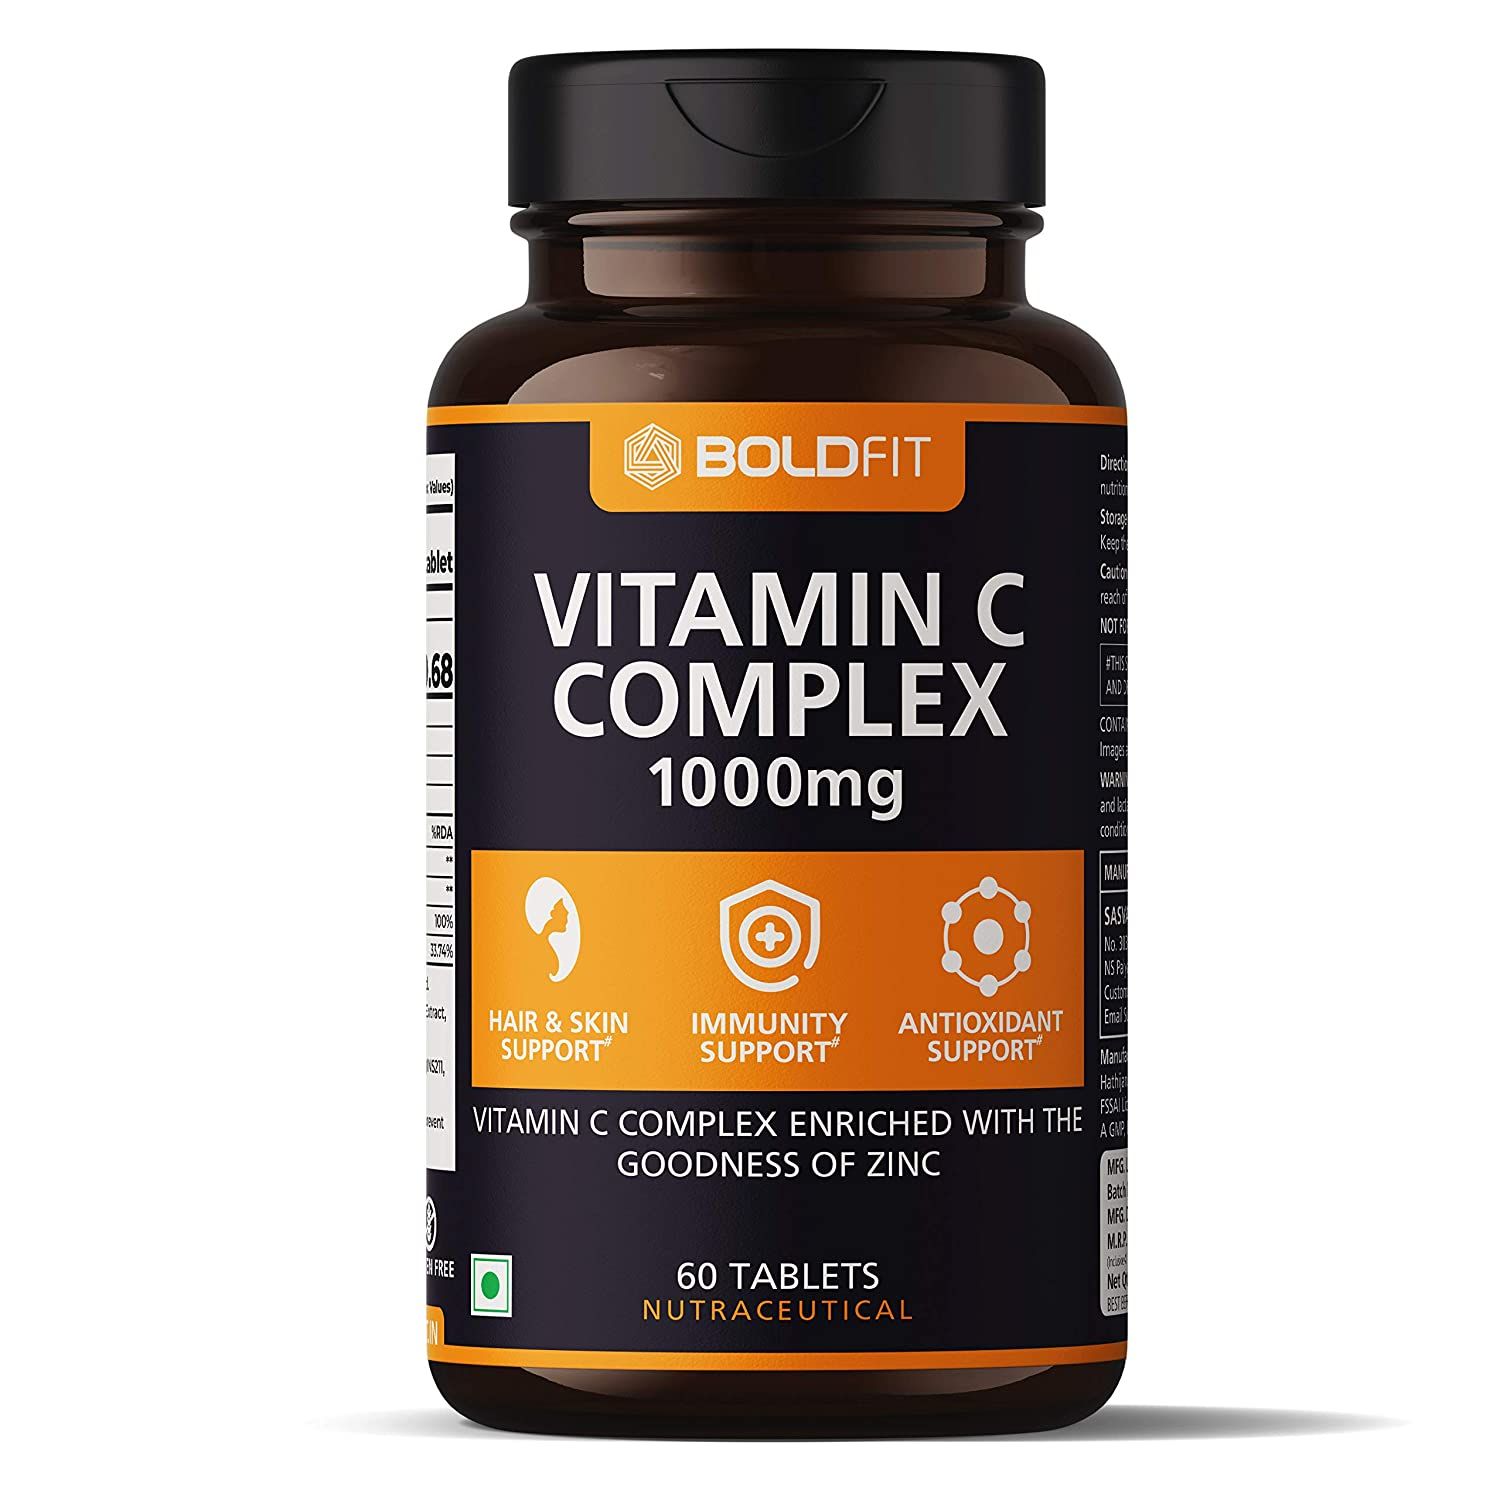 Boldfit Vitamin C Complex Image